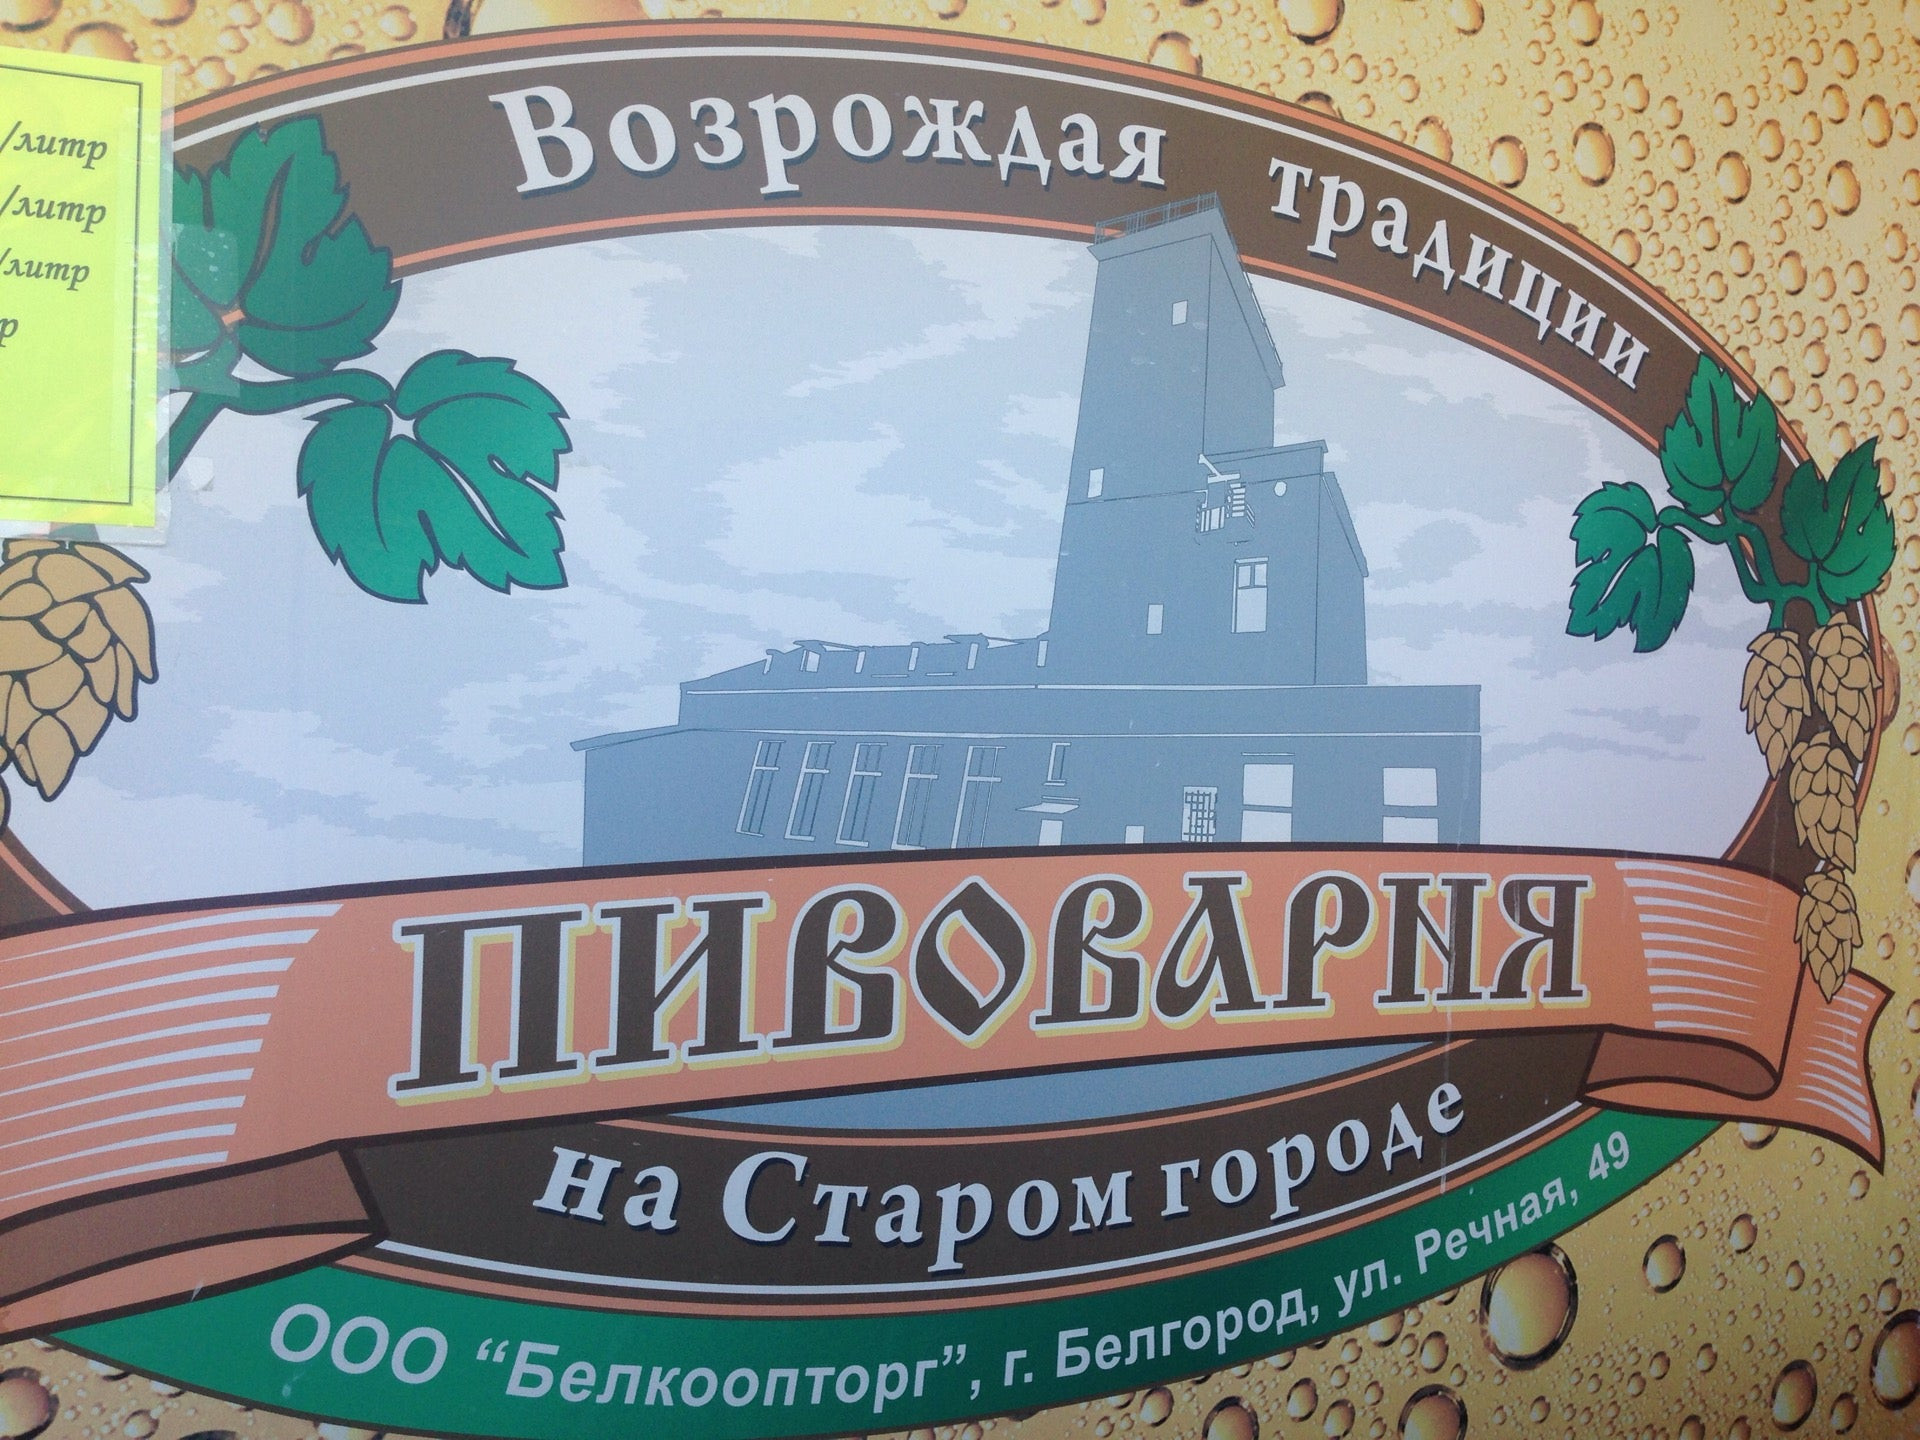 Город пивоварни. Речная 49 Белгород пивоварня. Пивоварня старый город Белгород. Белгород Речная улица 49 пивоварня на Старом городе. Старая пивоварня.